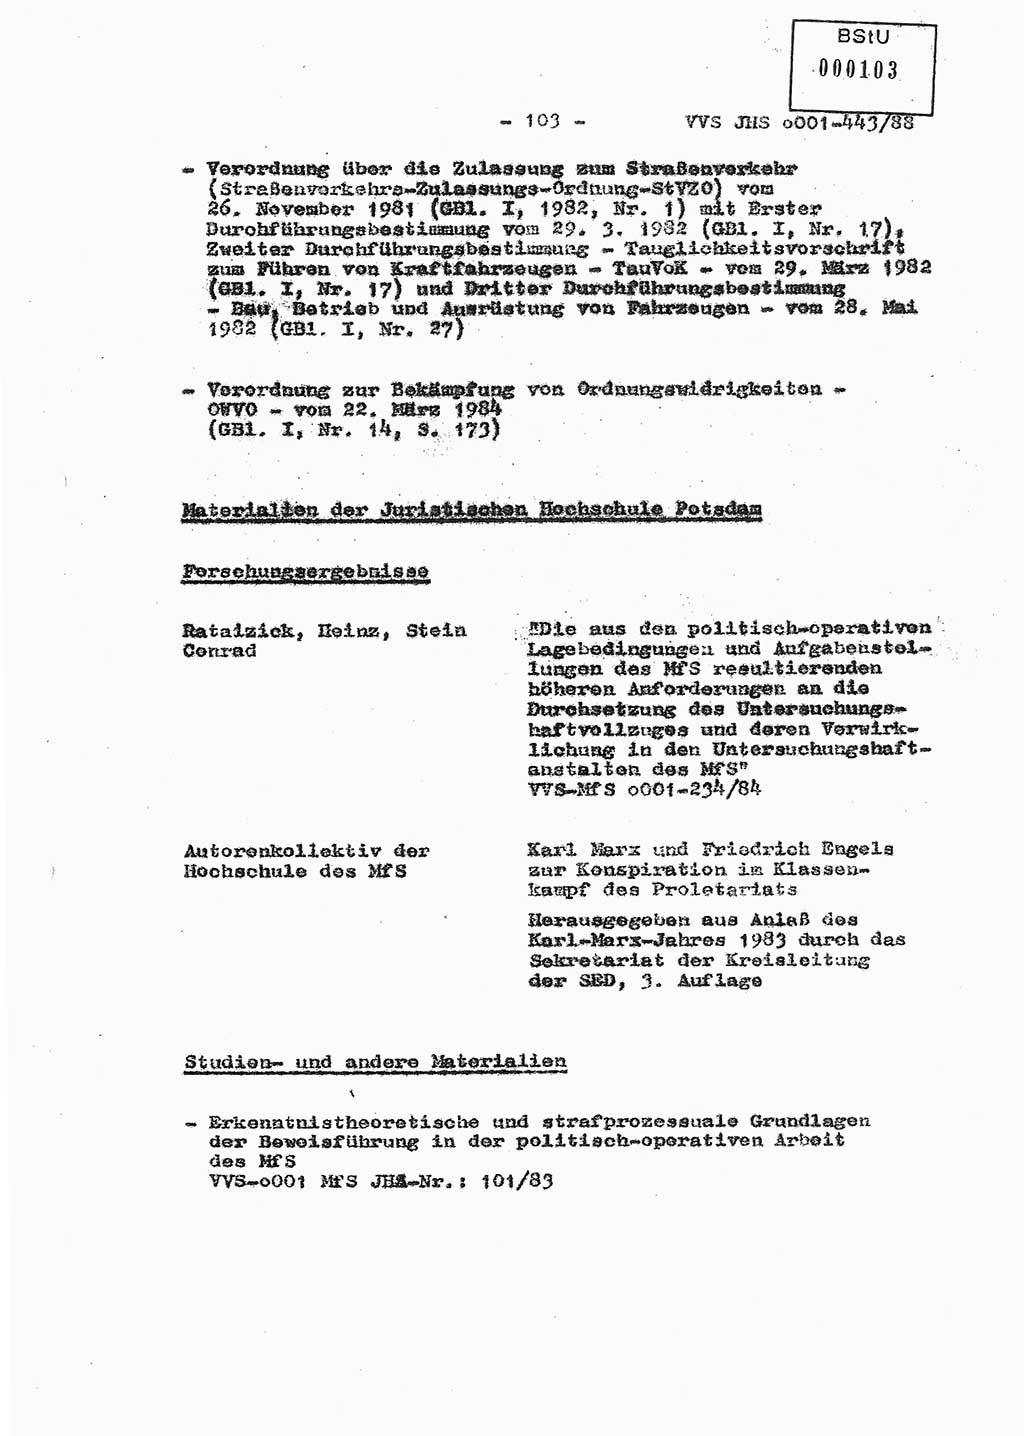 Diplomarbeit Hauptmann Michael Rast (Abt. ⅩⅣ), Major Bernd Rahaus (Abt. ⅩⅣ), Ministerium für Staatssicherheit (MfS) [Deutsche Demokratische Republik (DDR)], Juristische Hochschule (JHS), Vertrauliche Verschlußsache (VVS) o001-443/88, Potsdam 1988, Seite 103 (Dipl.-Arb. MfS DDR JHS VVS o001-443/88 1988, S. 103)